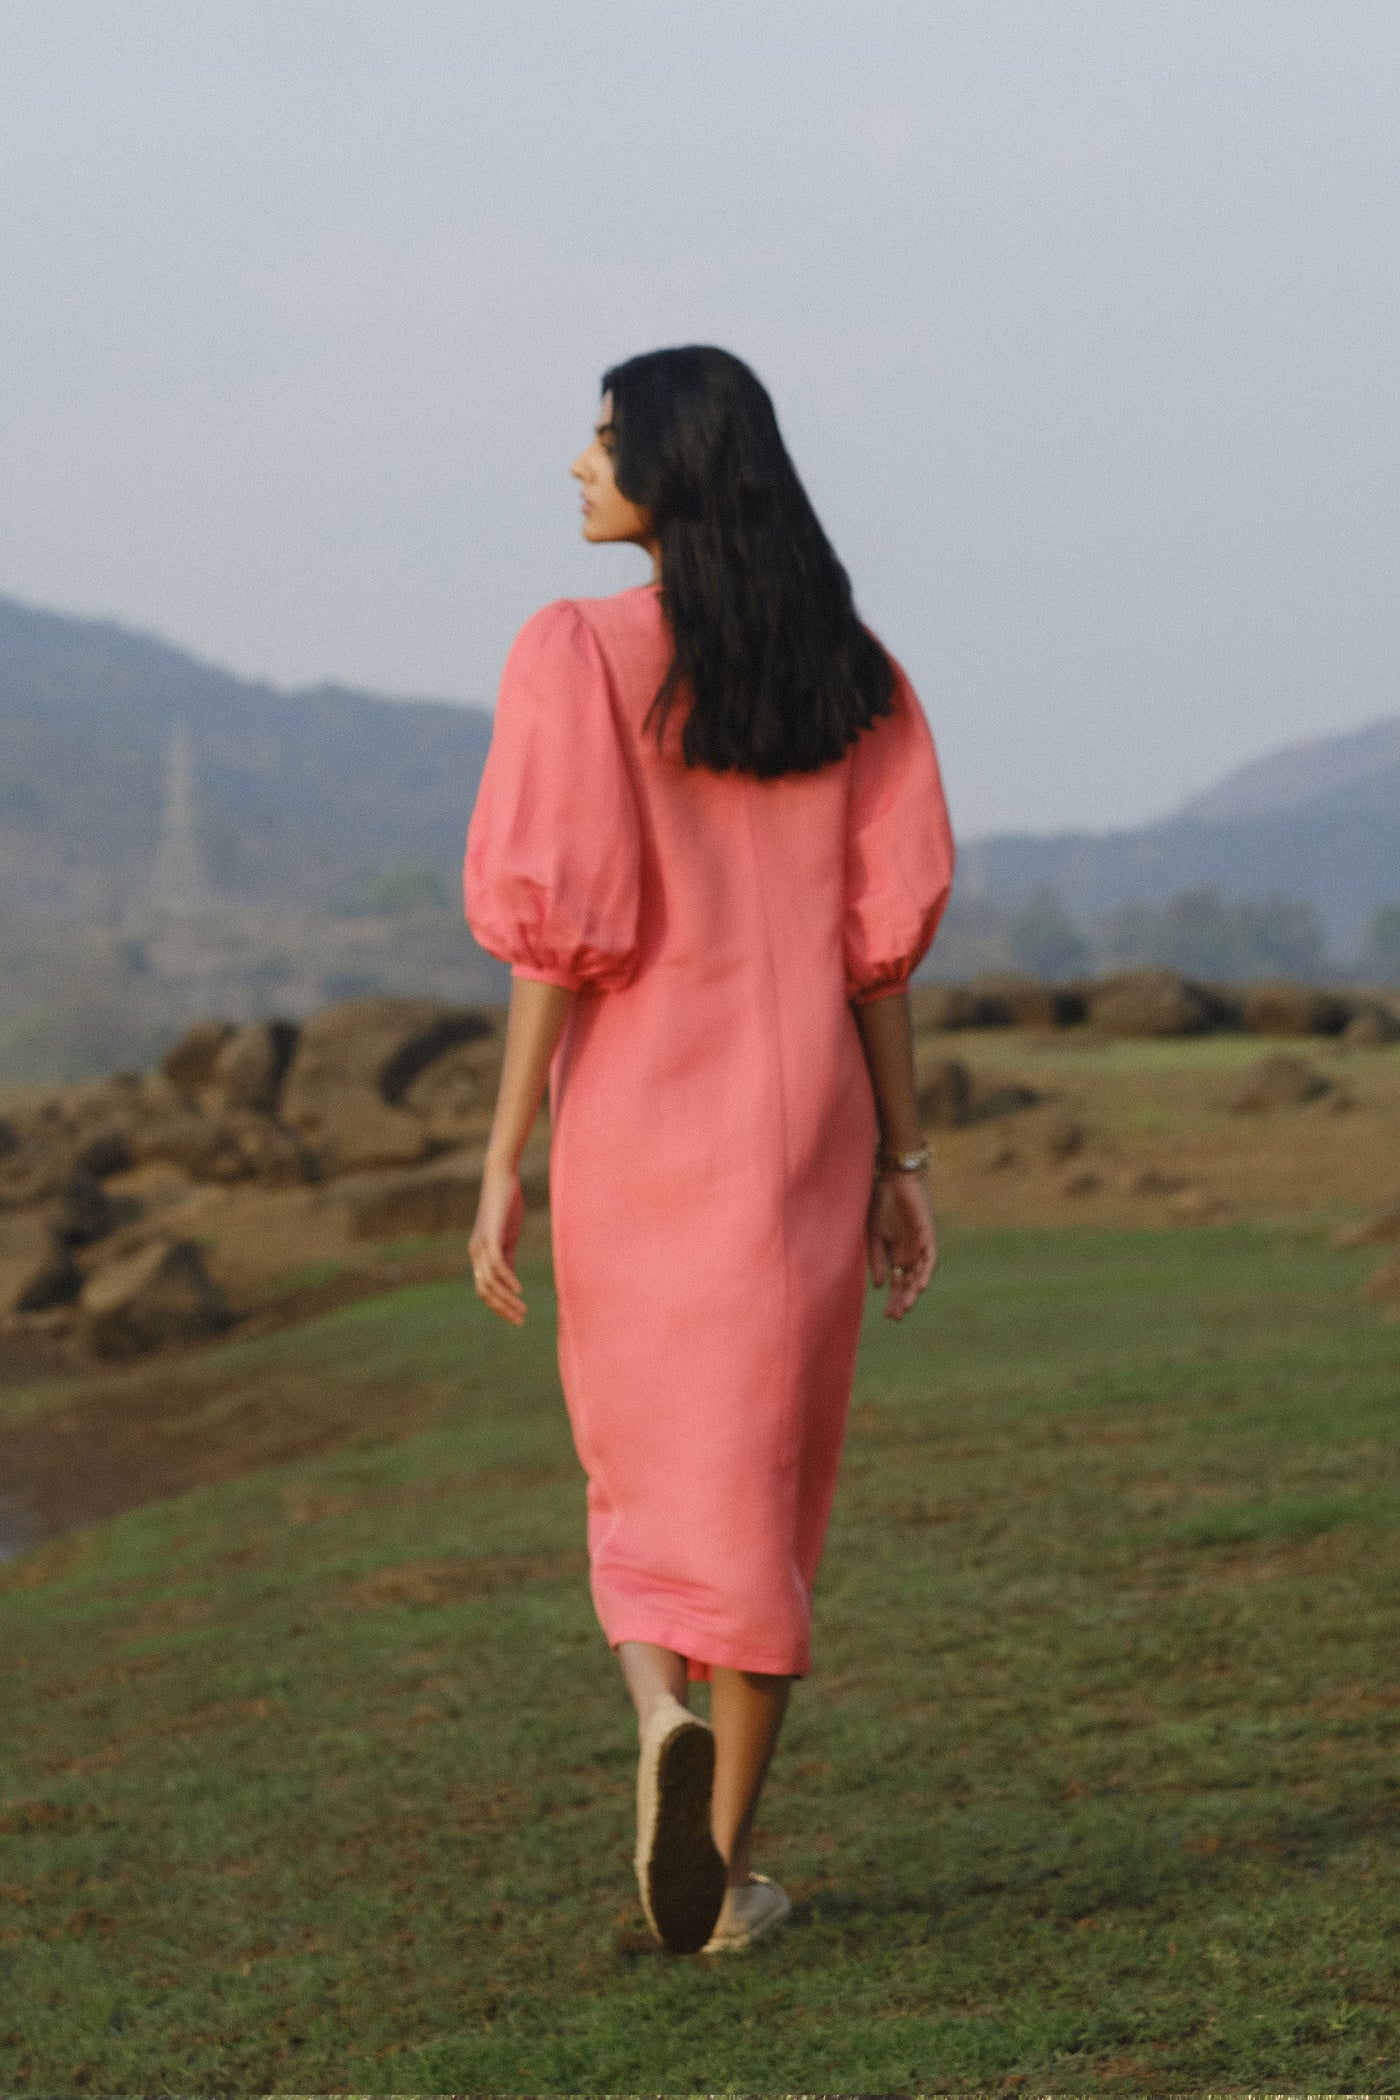 Anita Dongre Savannah Front Slit Dress Coral indian designer wear online shopping melange singapore